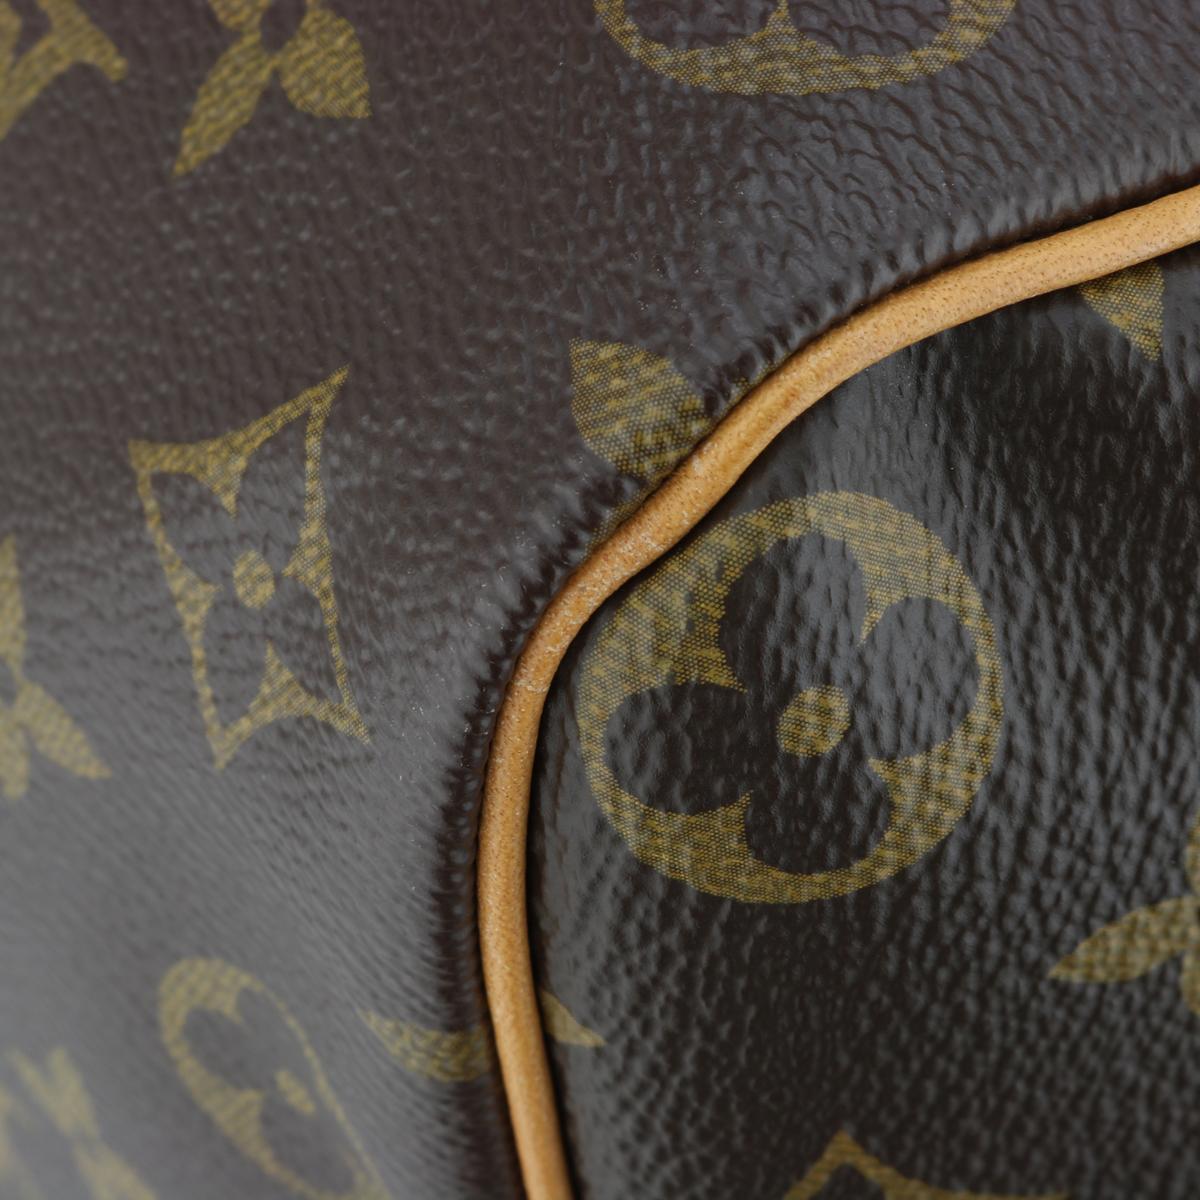 Louis Vuitton Speedy 35 Bag in Monogram 2018 6